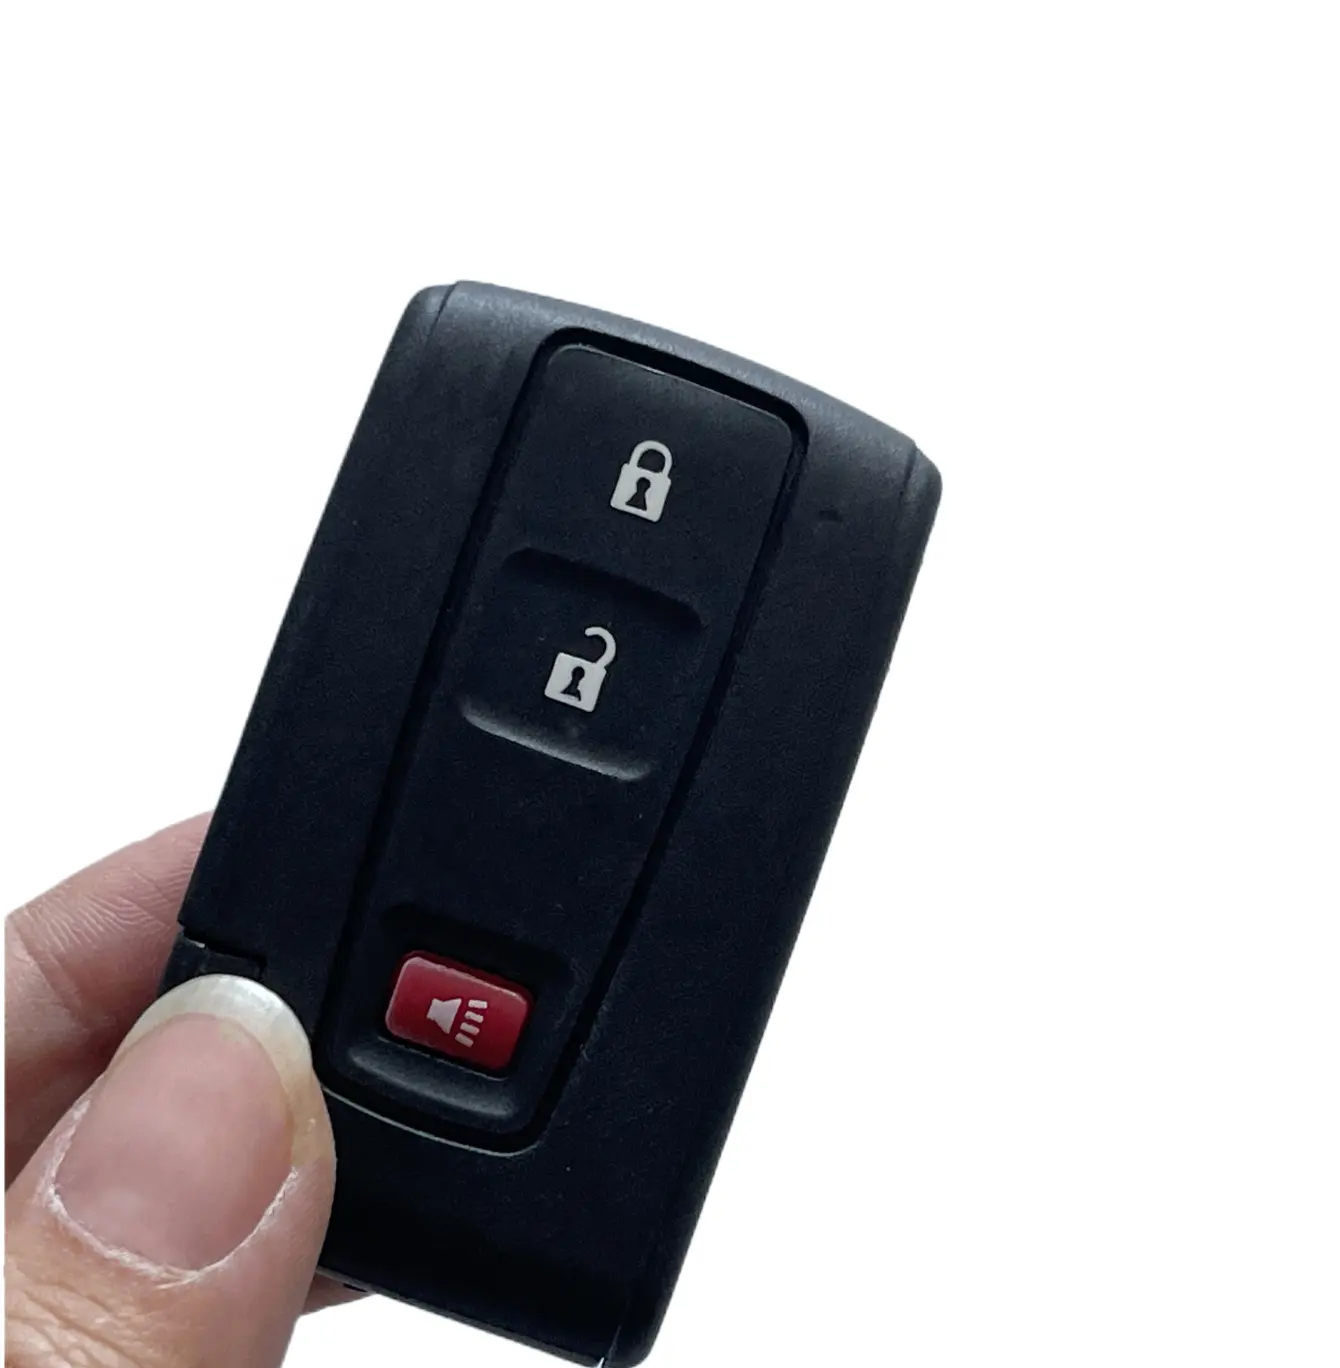 2004-2009 टोयोटा प्रियस के लिए कुंजी खोल ऑटोमोबाइल स्मार्ट कुंजी प्रतिस्थापन खोल